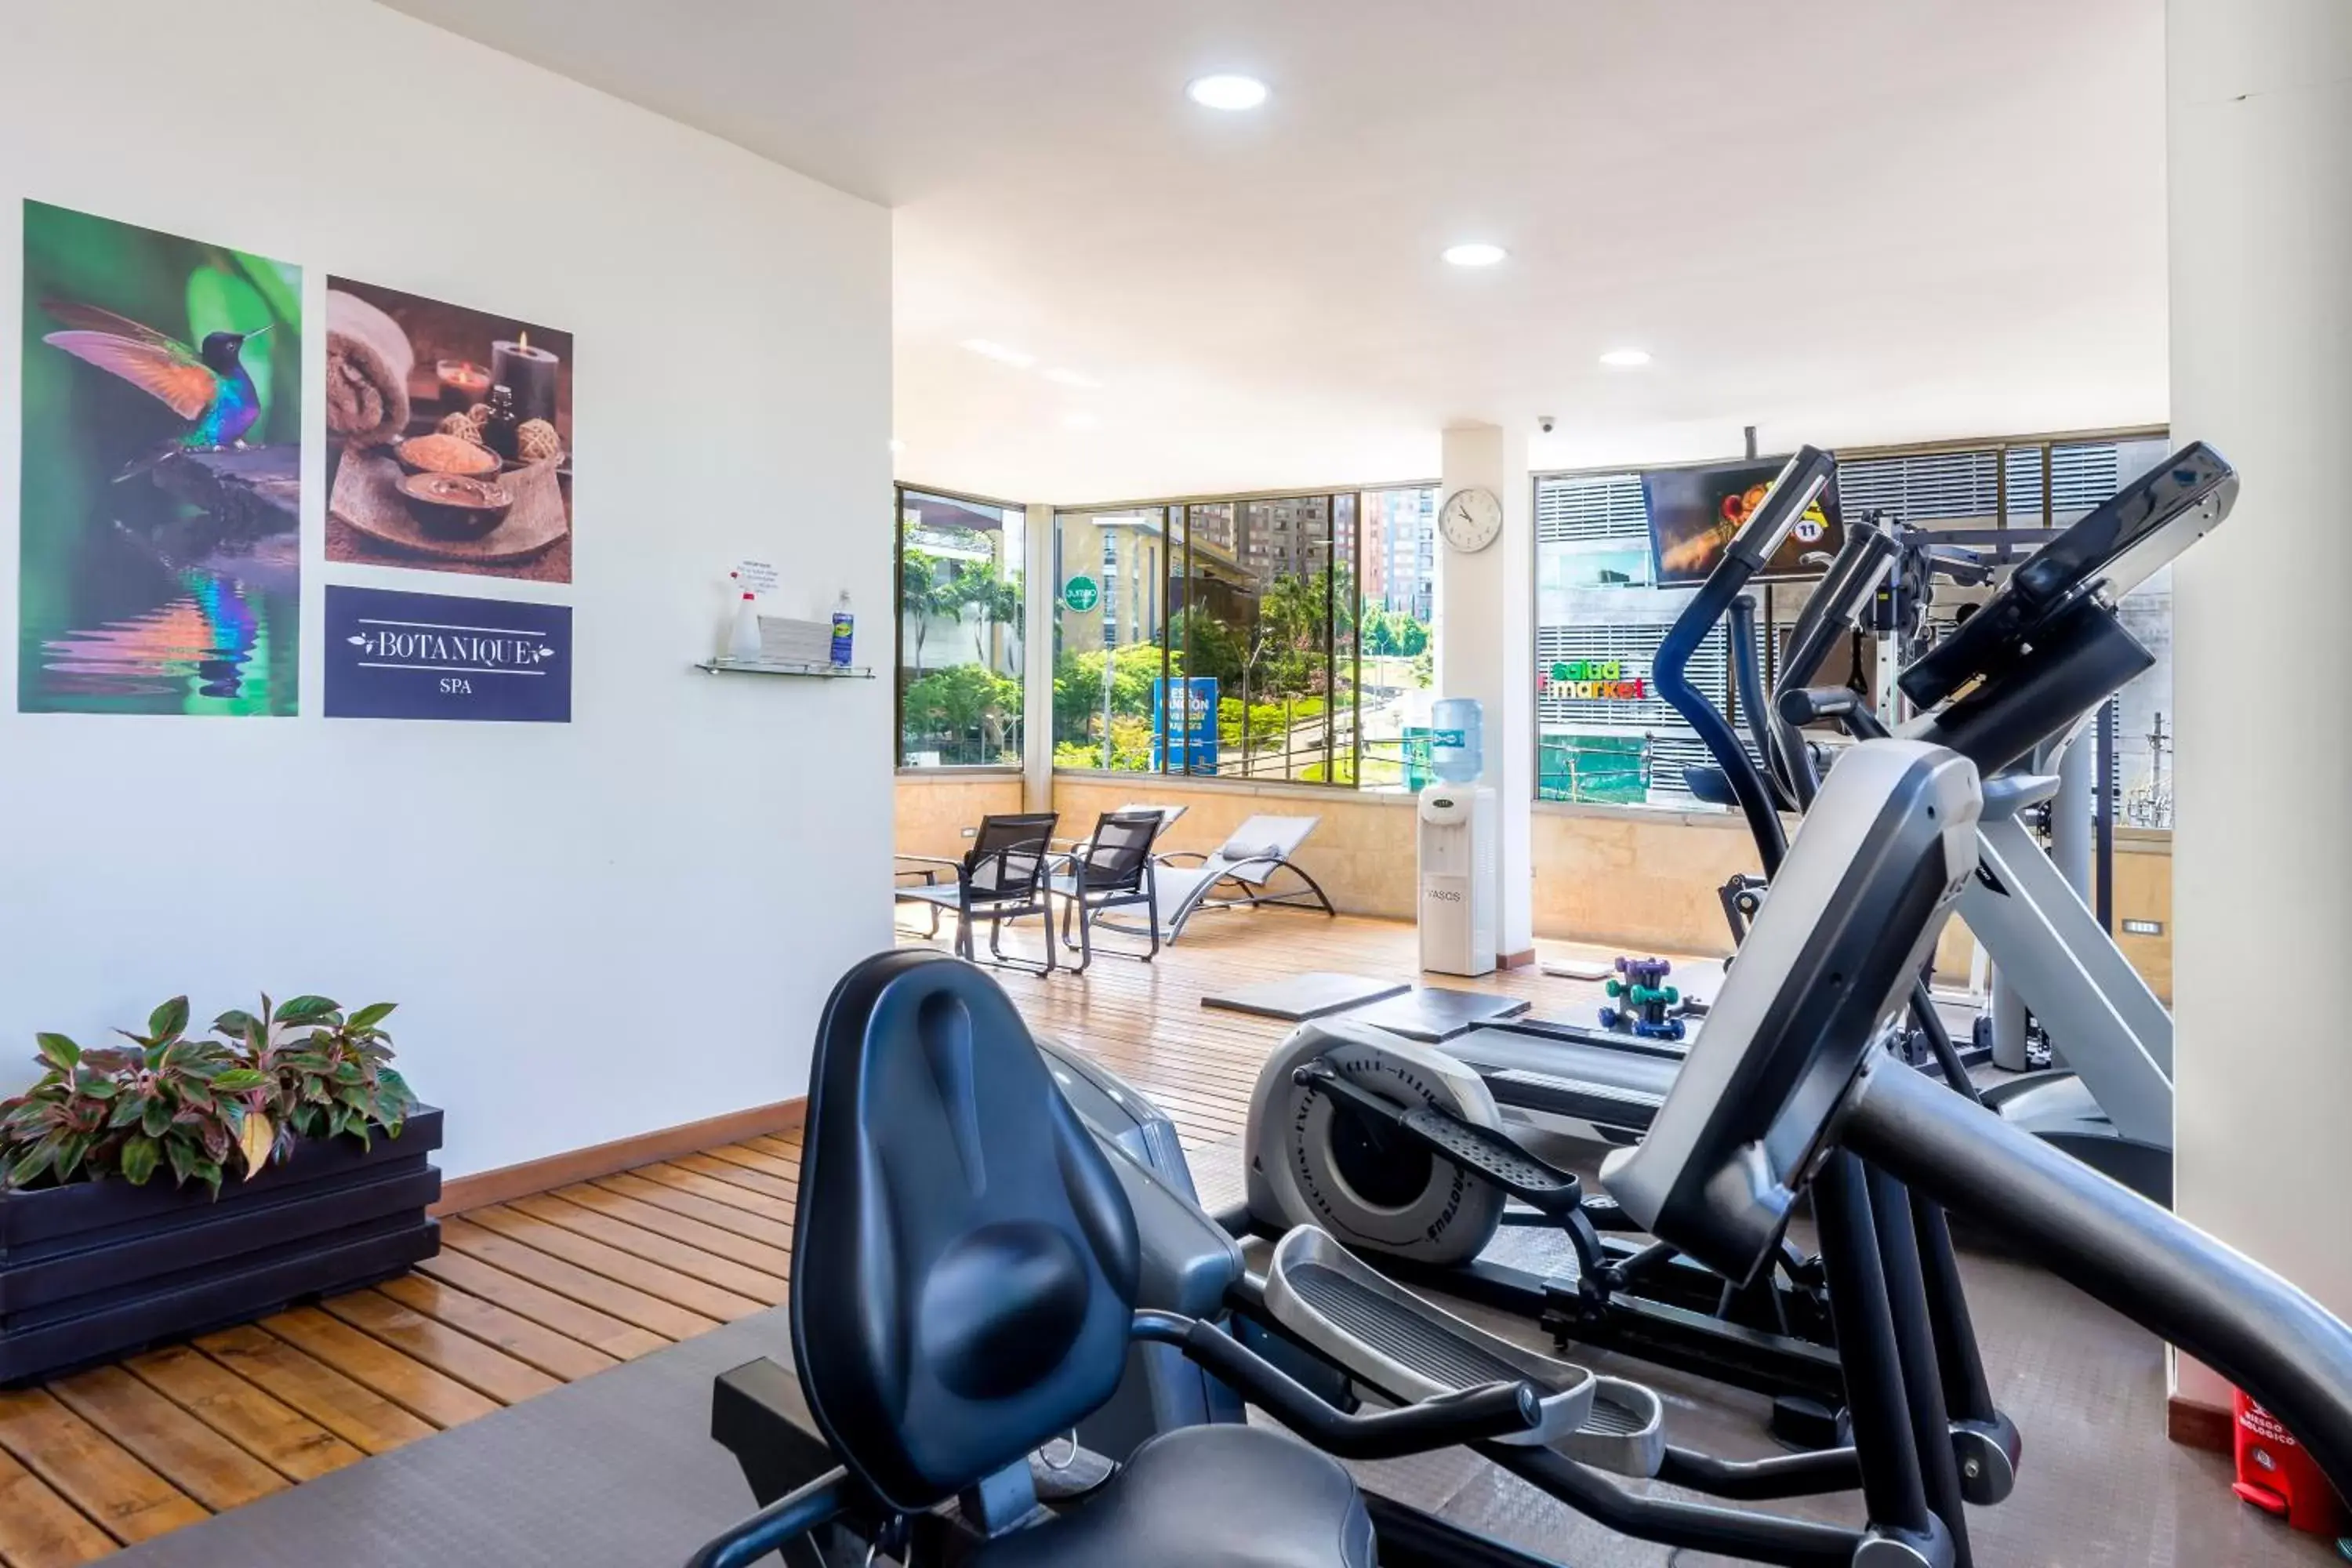 Fitness centre/facilities, Fitness Center/Facilities in GHL Hotel Portón Medellín